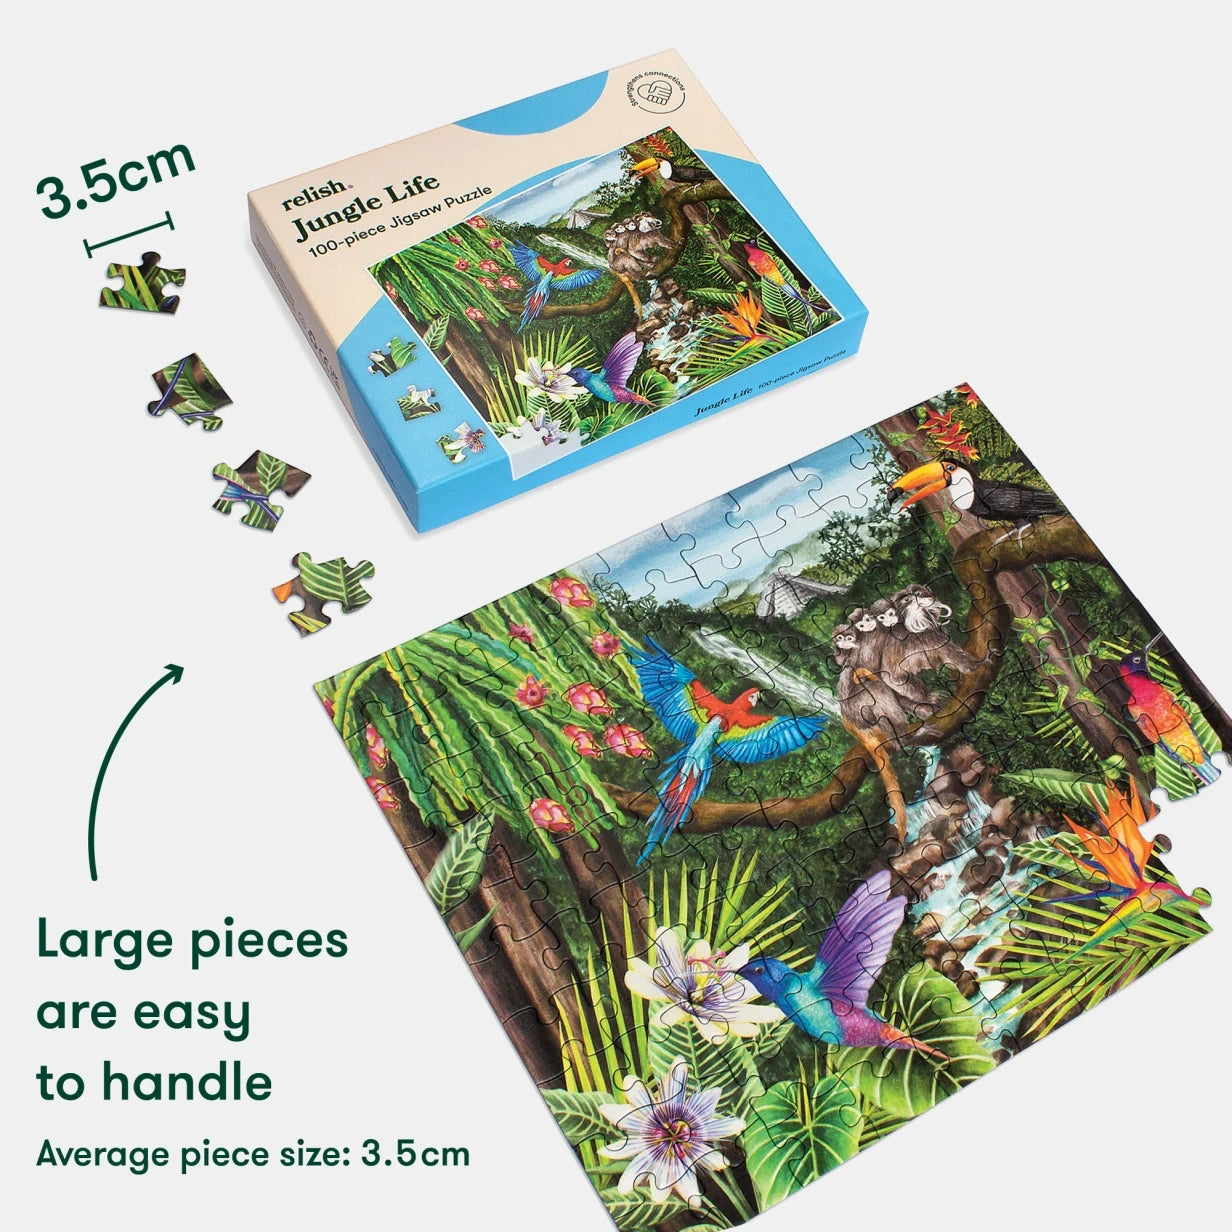 Puzzle 100 pièces - Jungle Life